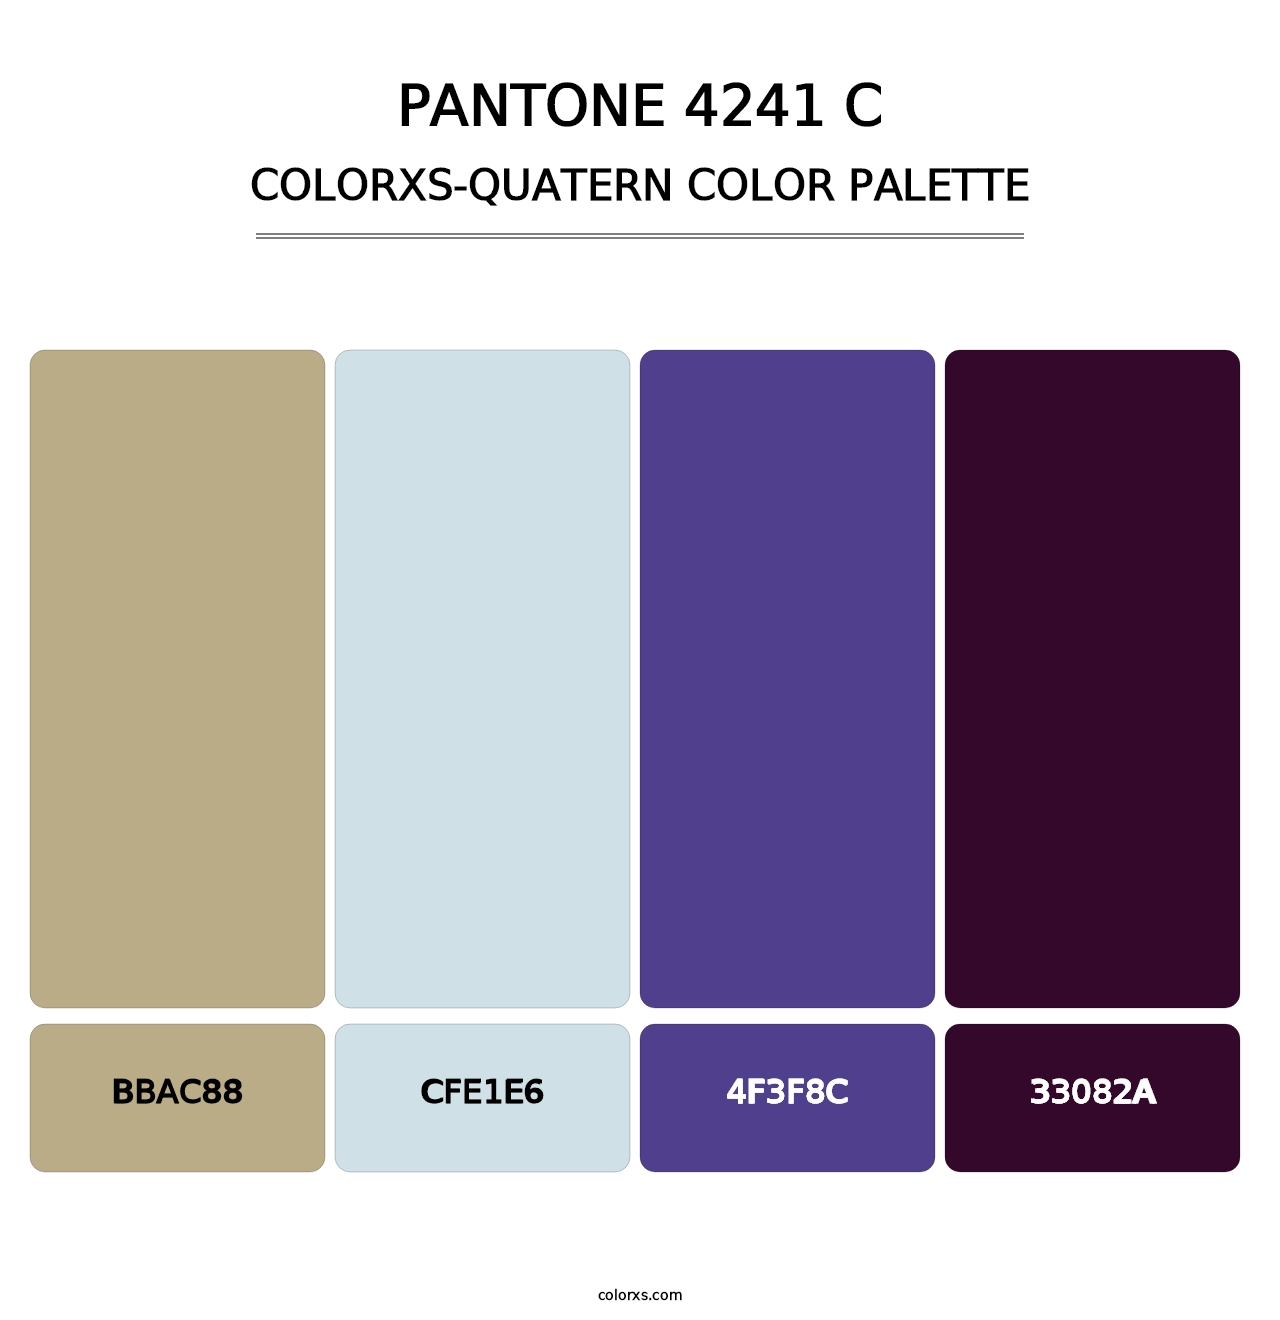 PANTONE 4241 C - Colorxs Quatern Palette